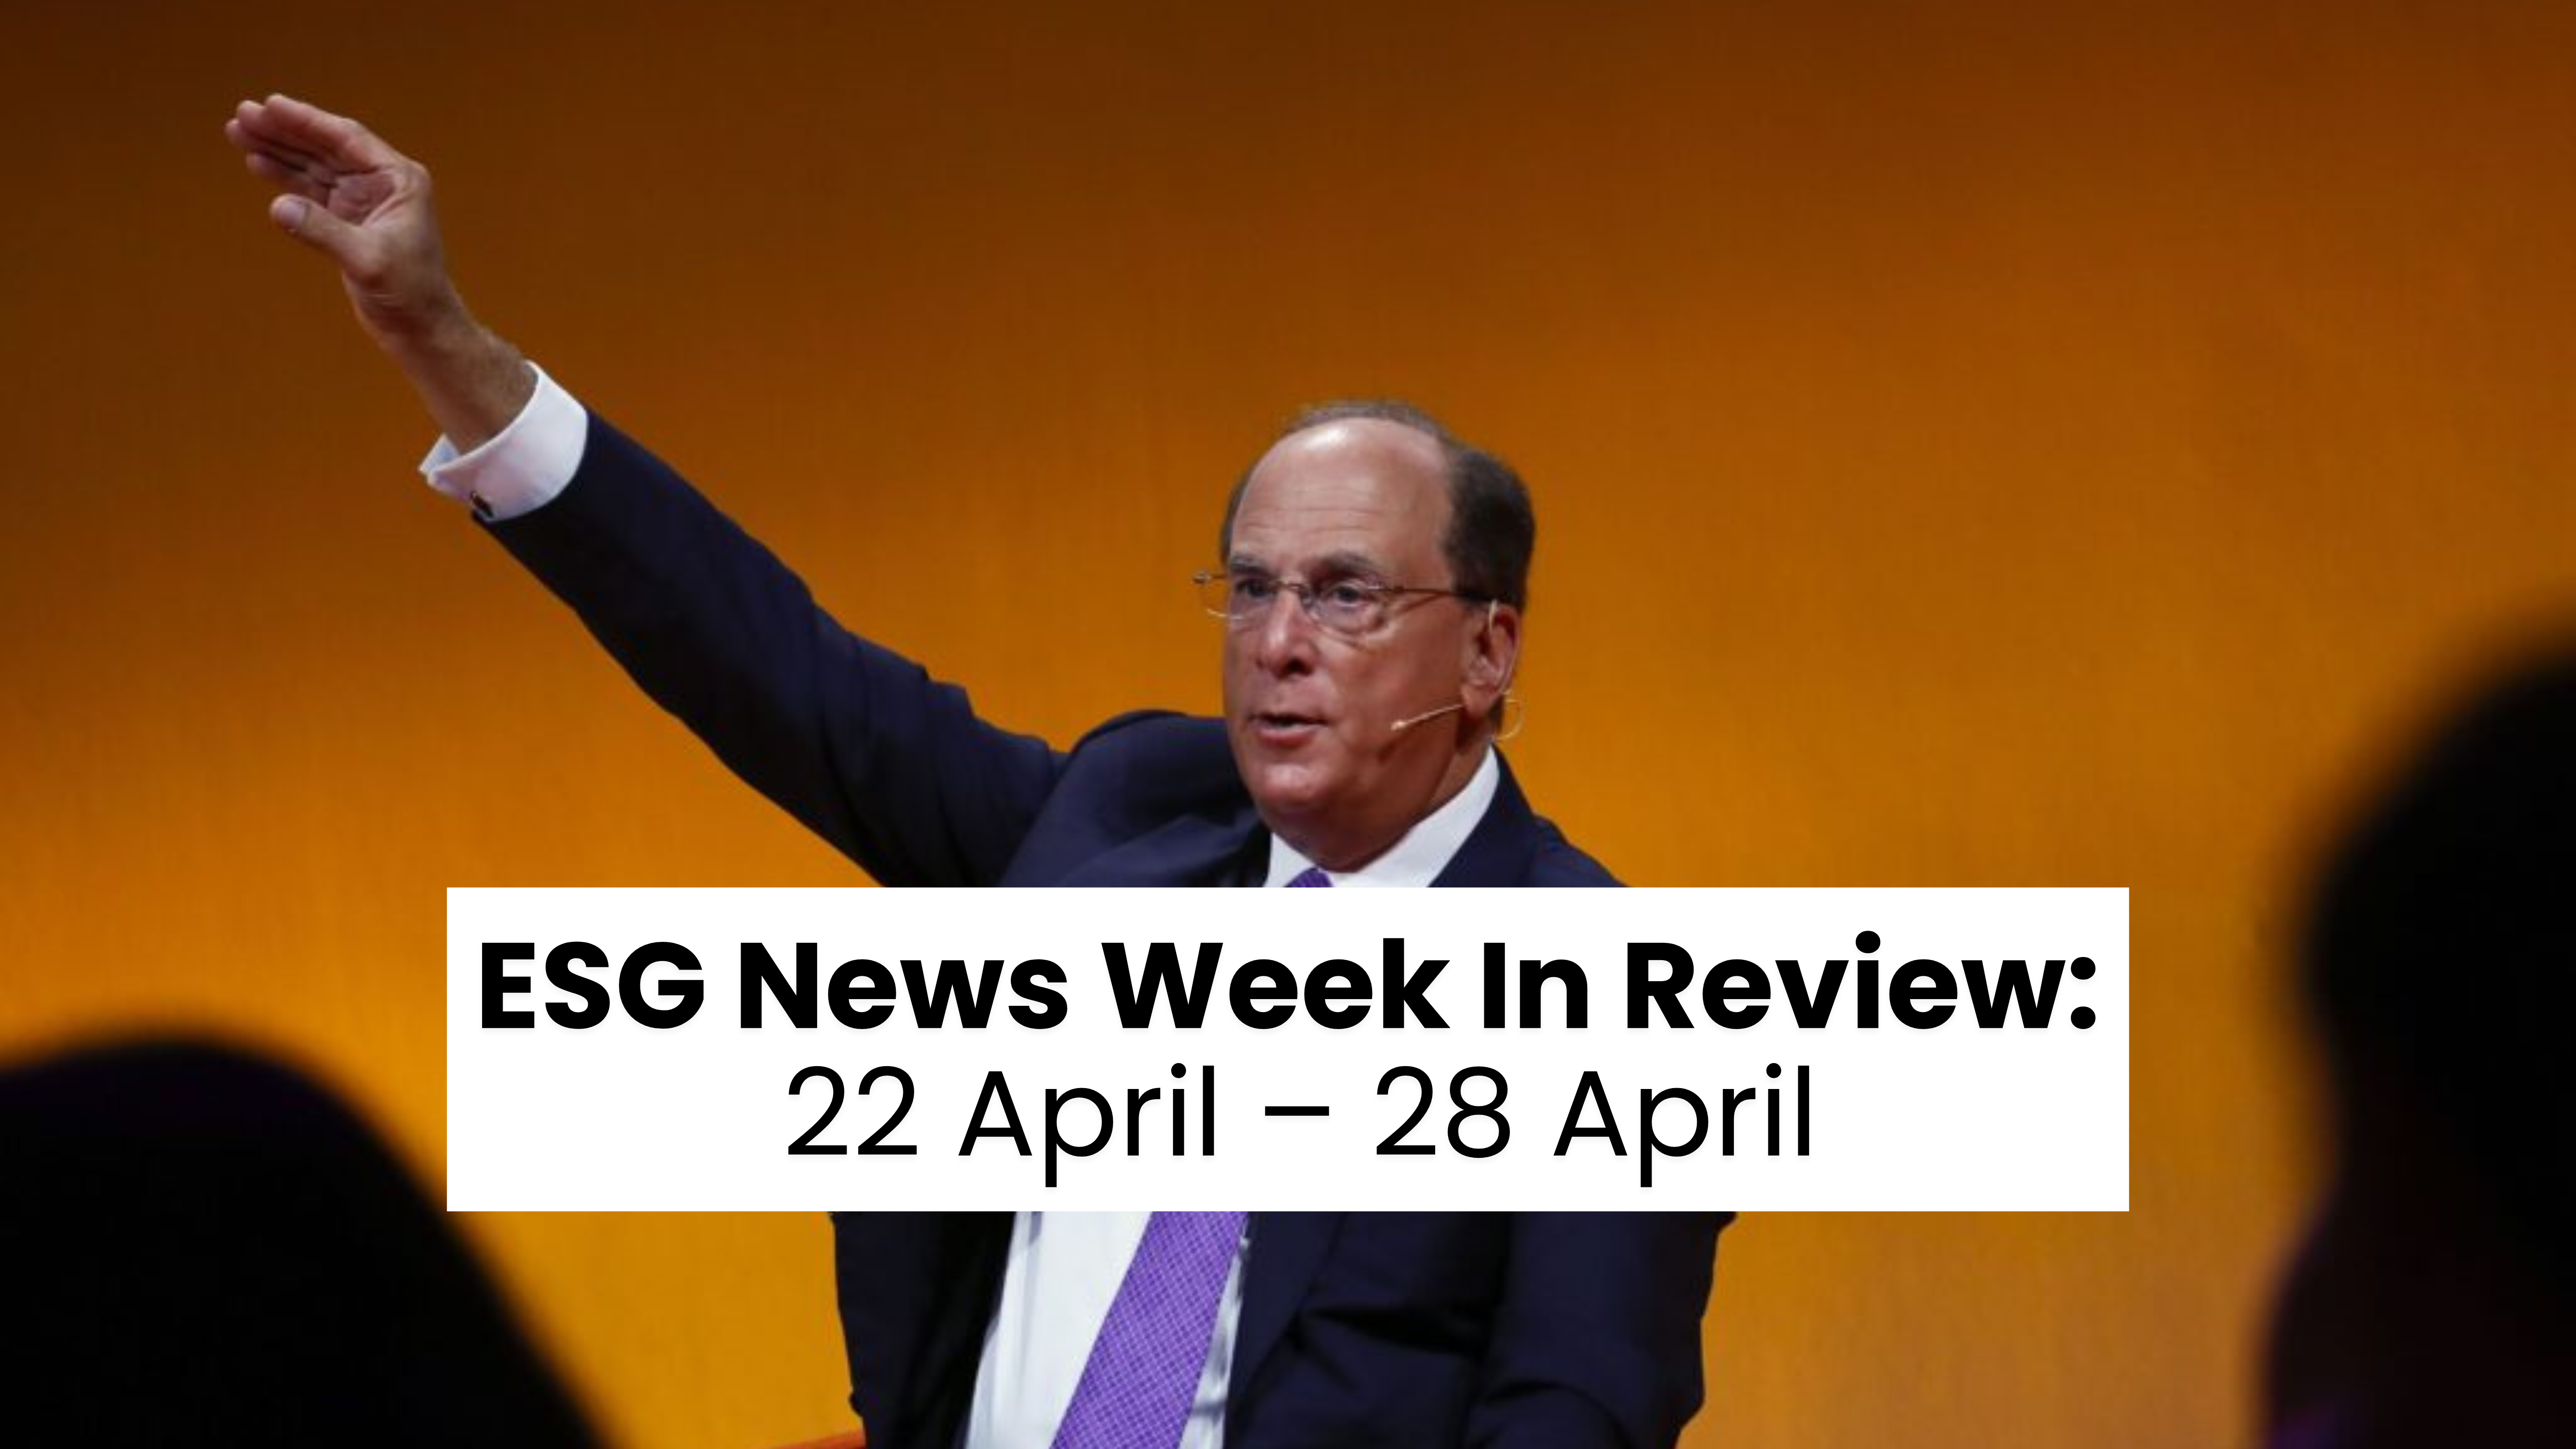 Rückblick auf die ESG-News-Woche vom 22. bis 28. April